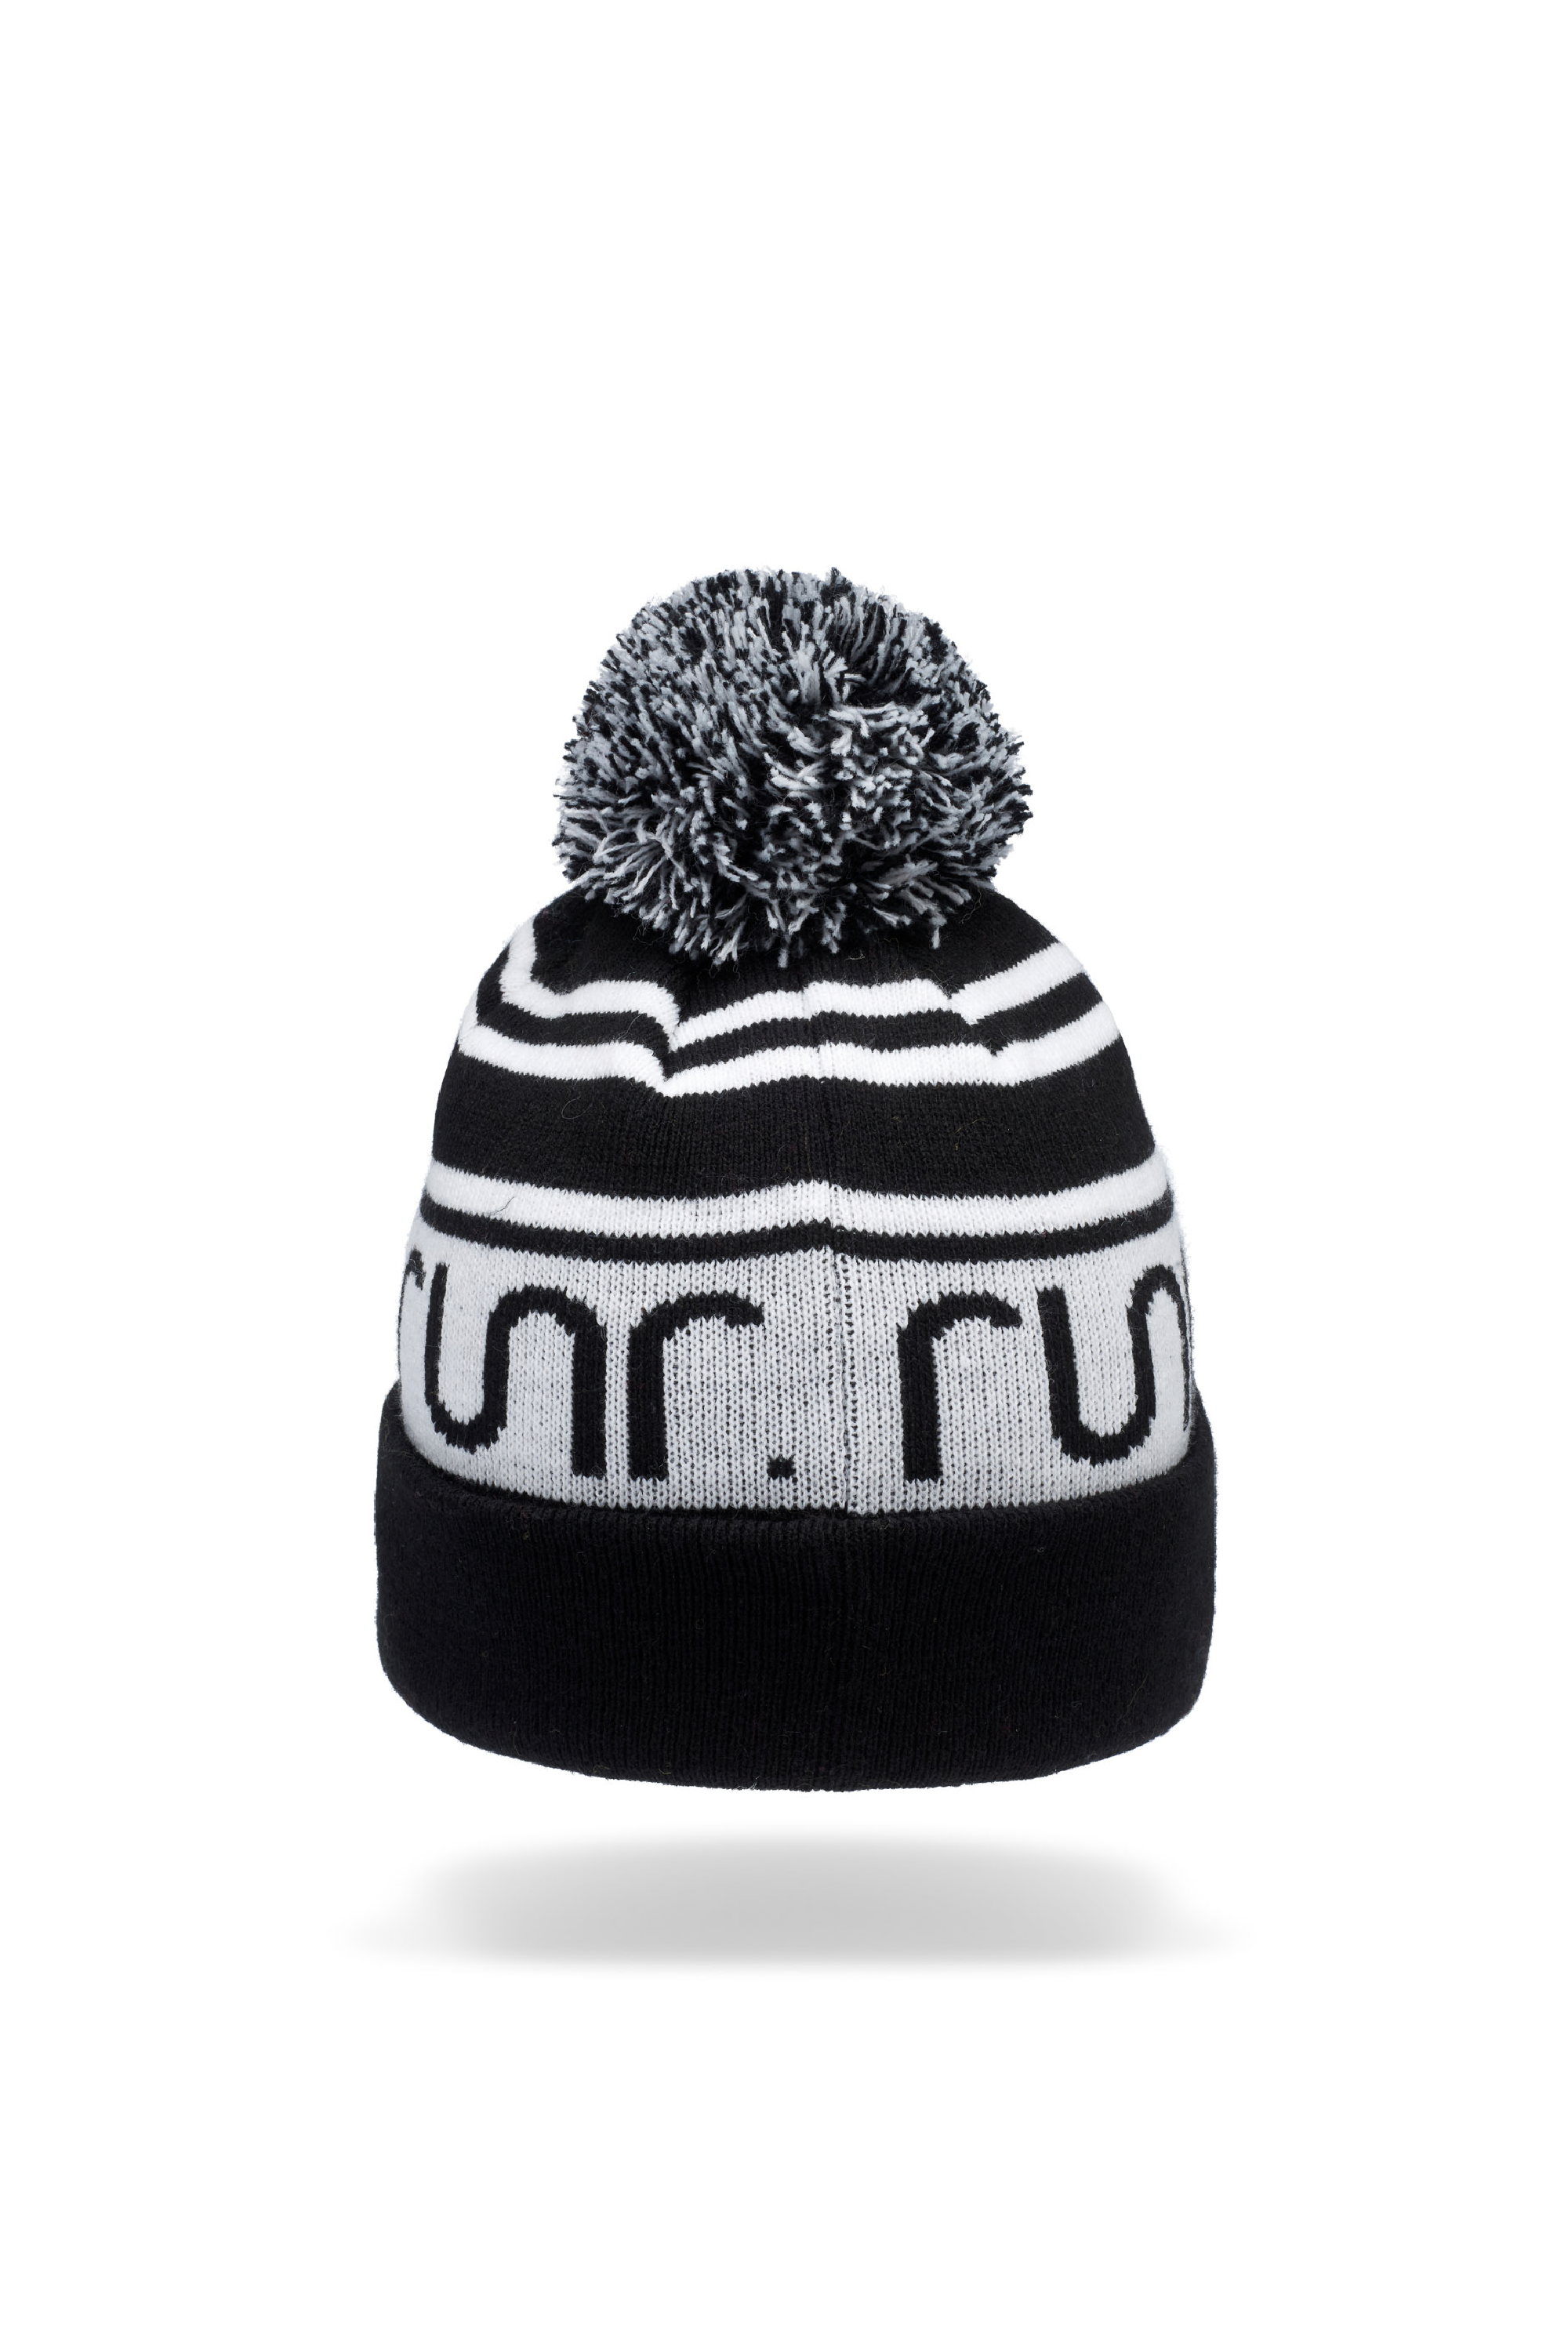 Runr Nordic Bobble Hat - Black & White